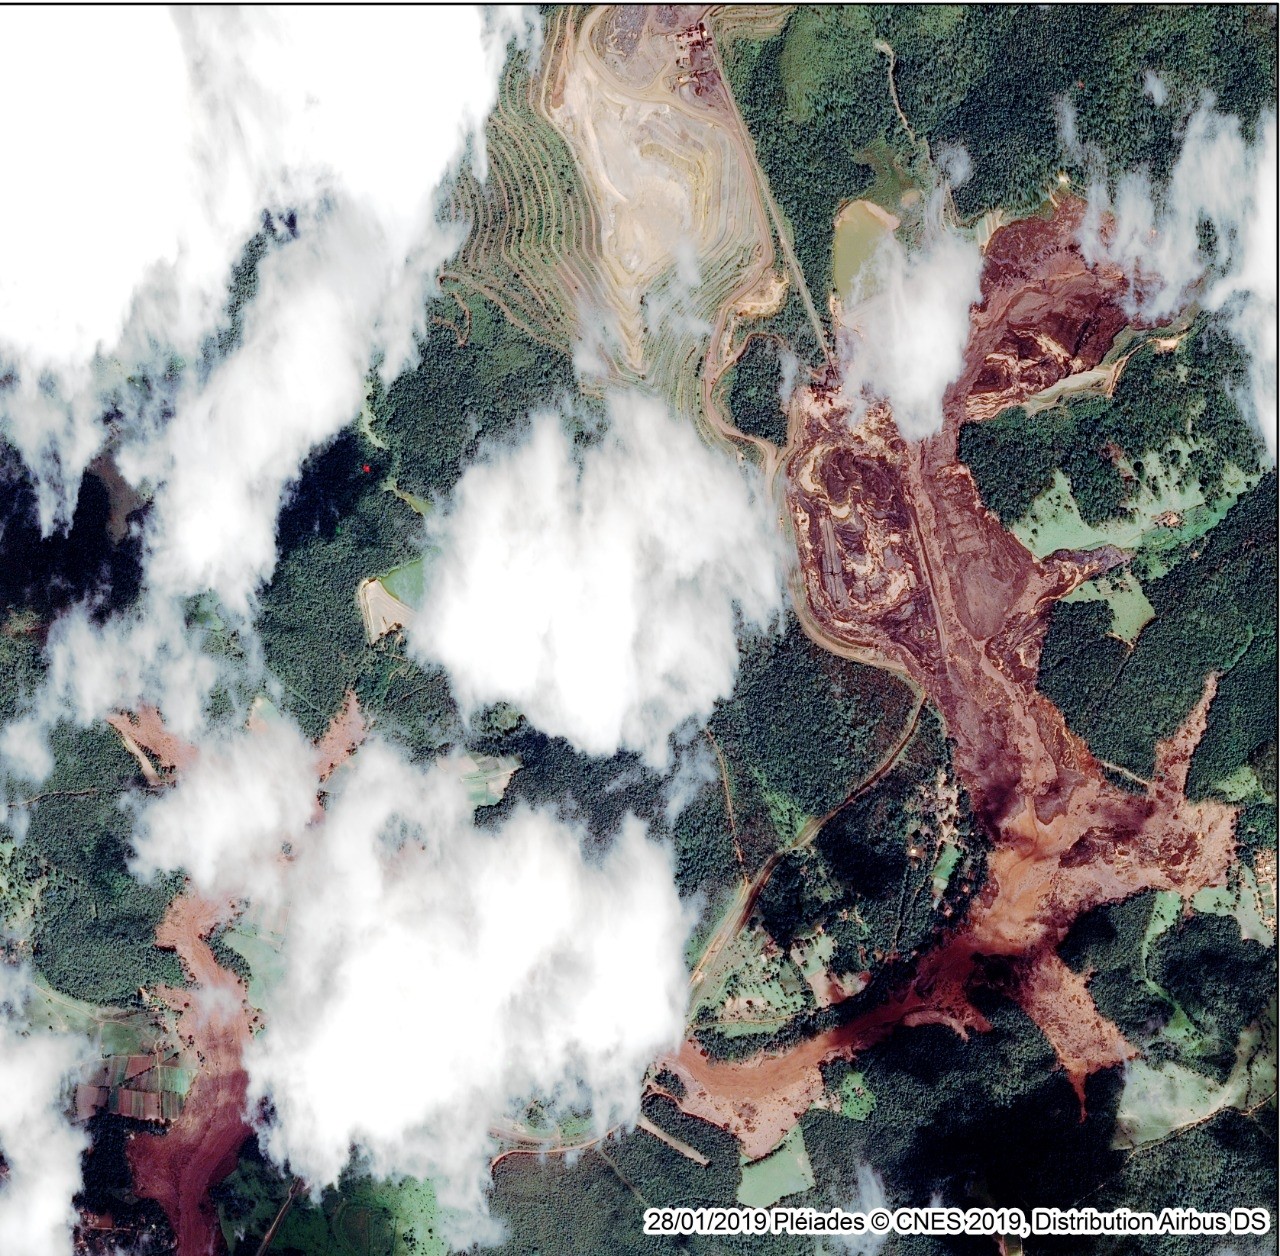 Desastre ambiental na barragem de Feijão, Brumadinho